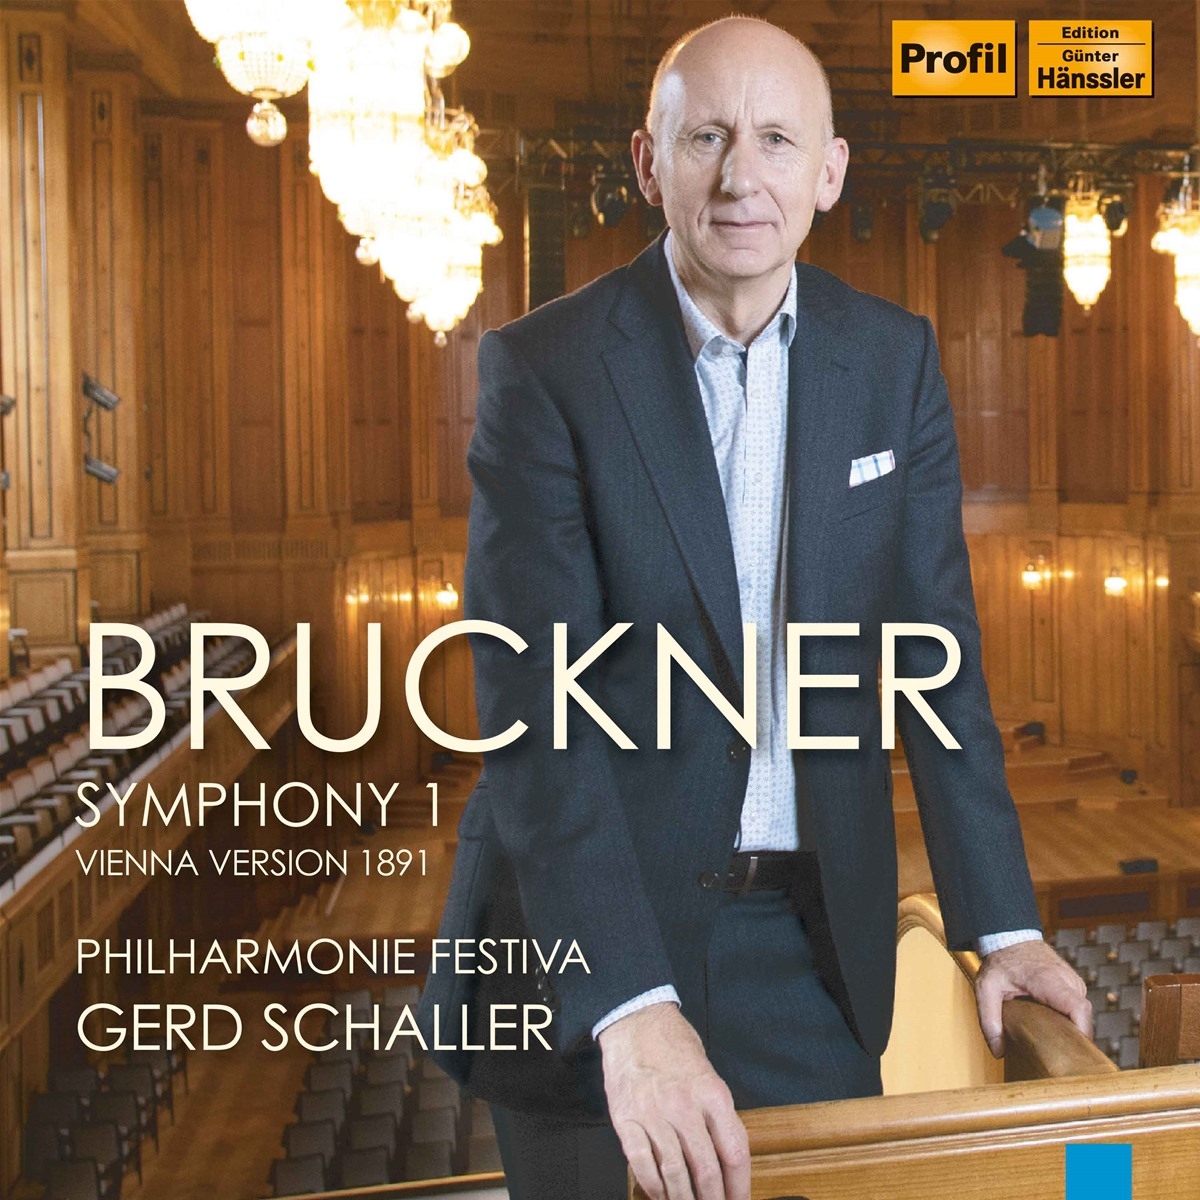 Bruckner Symphony 1 - Vienna Version 1891